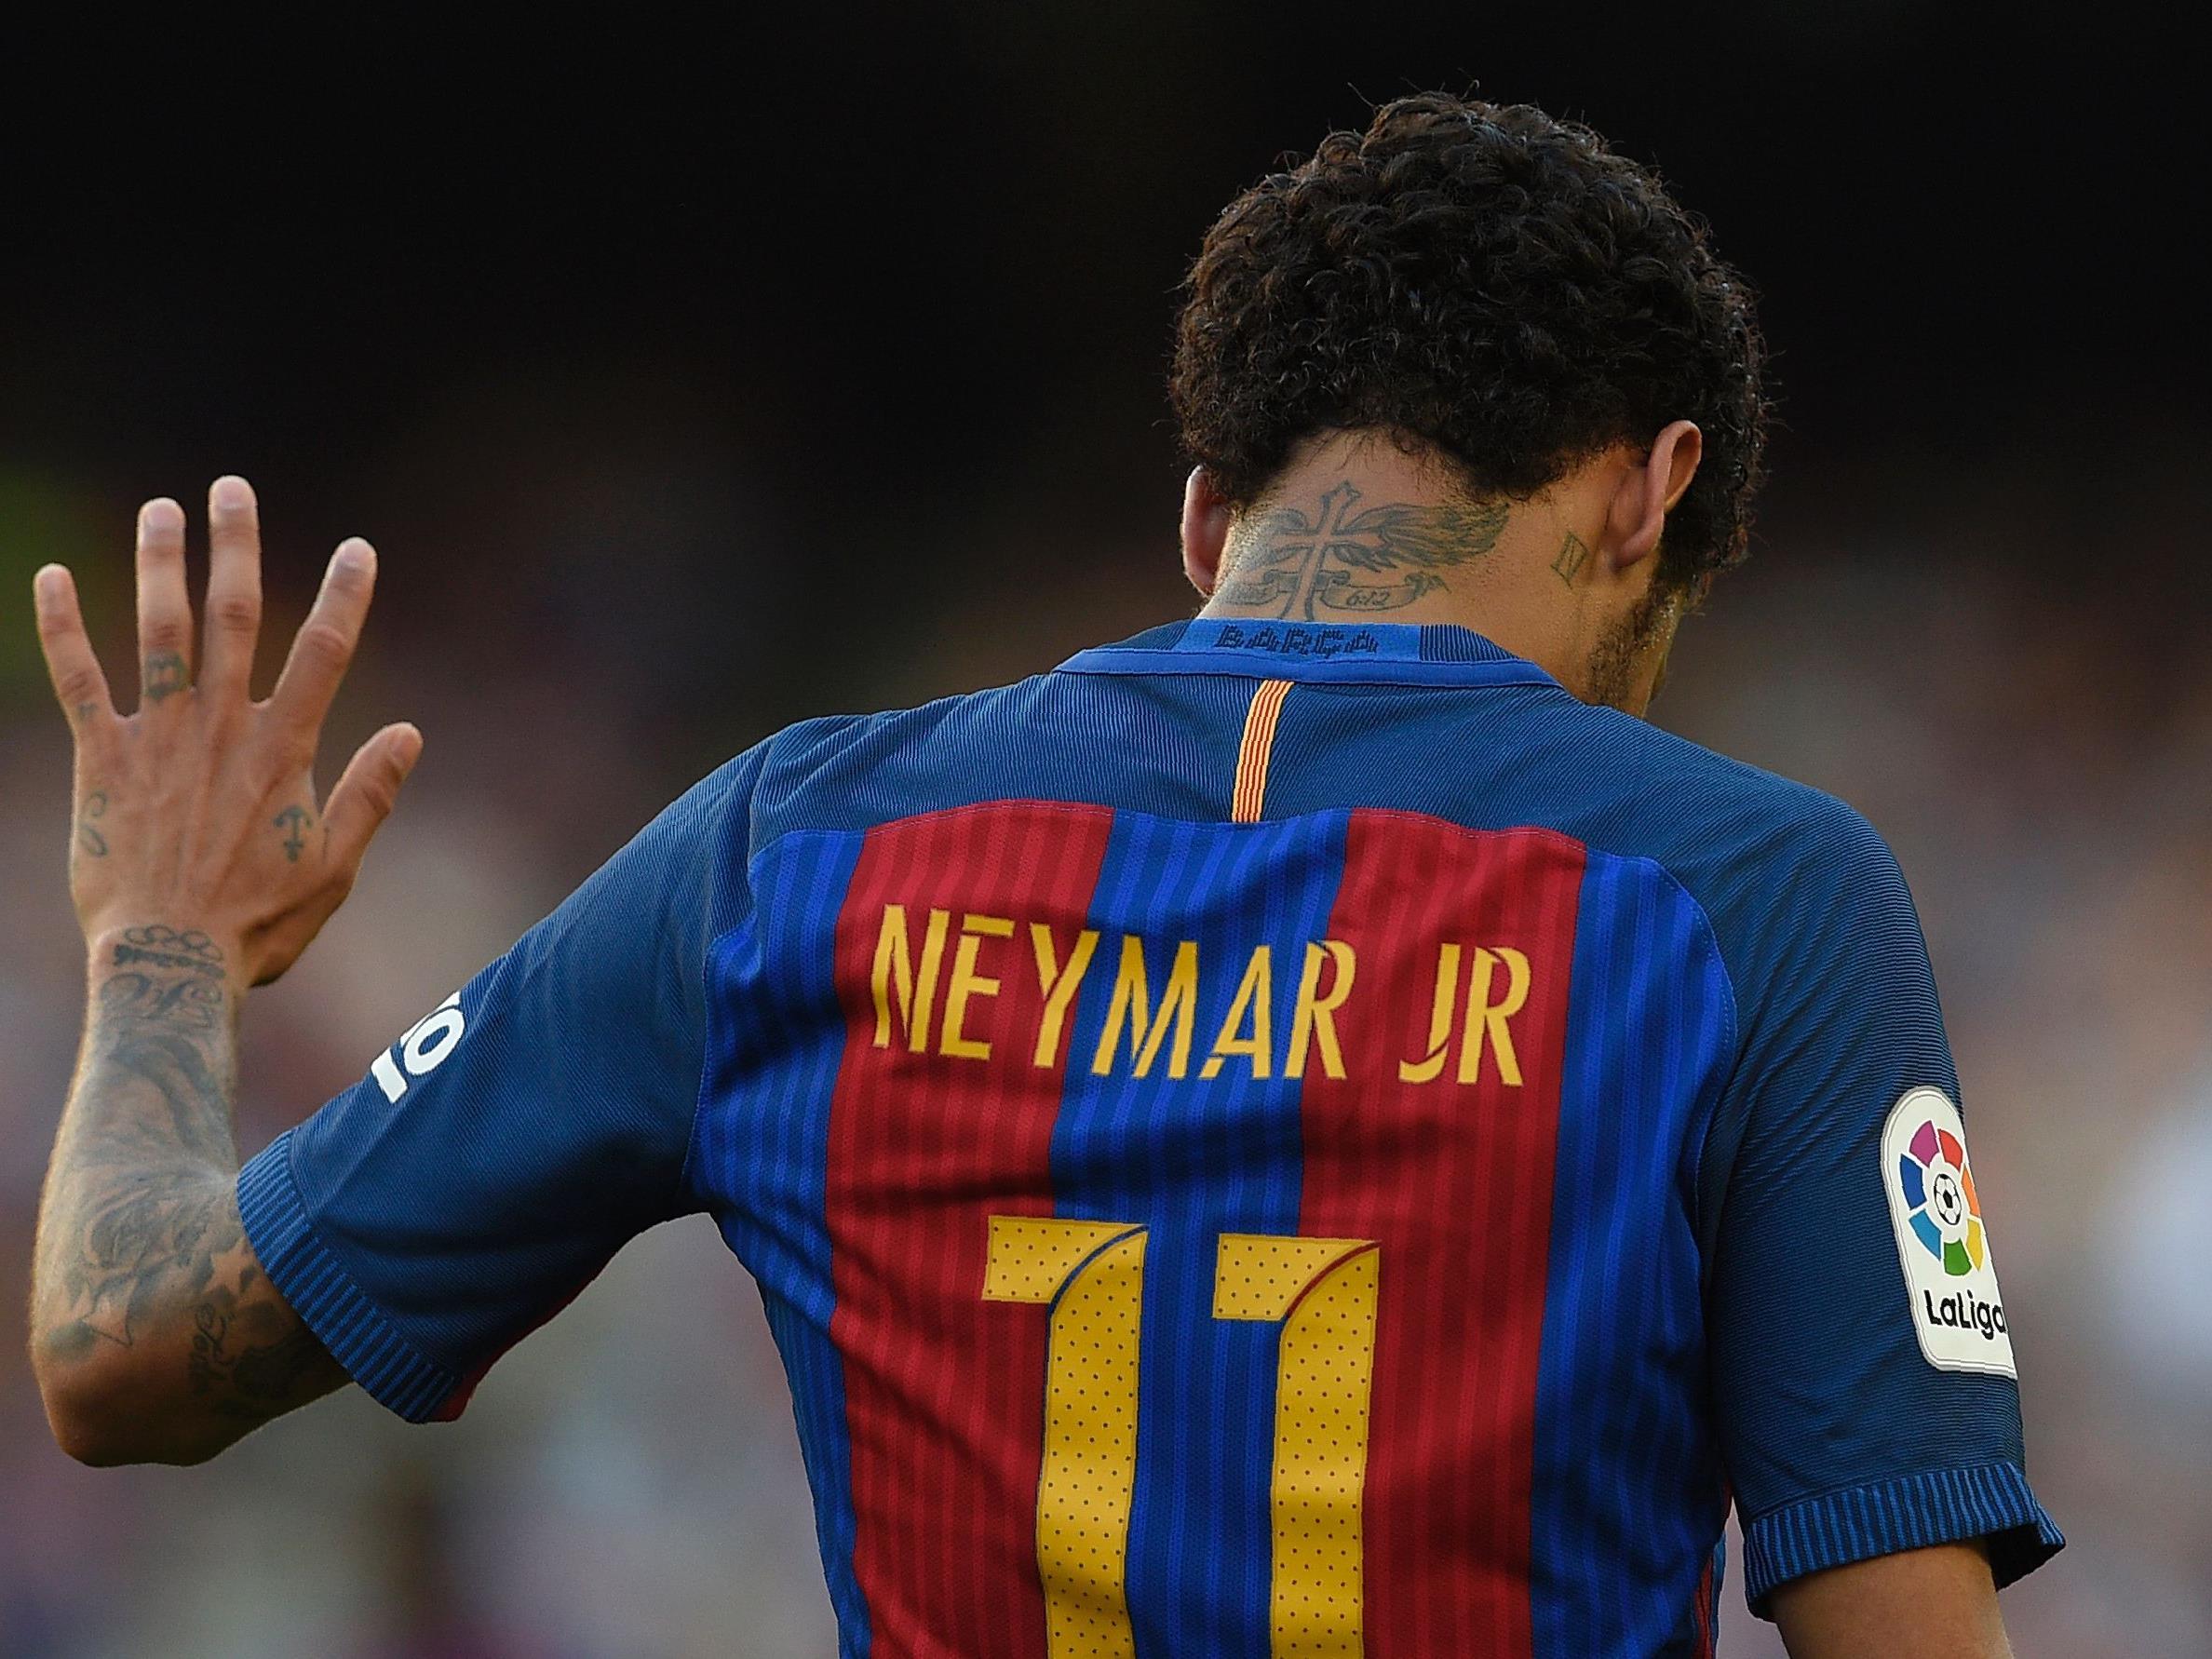 Neymar verabschiedet sich von Barca.